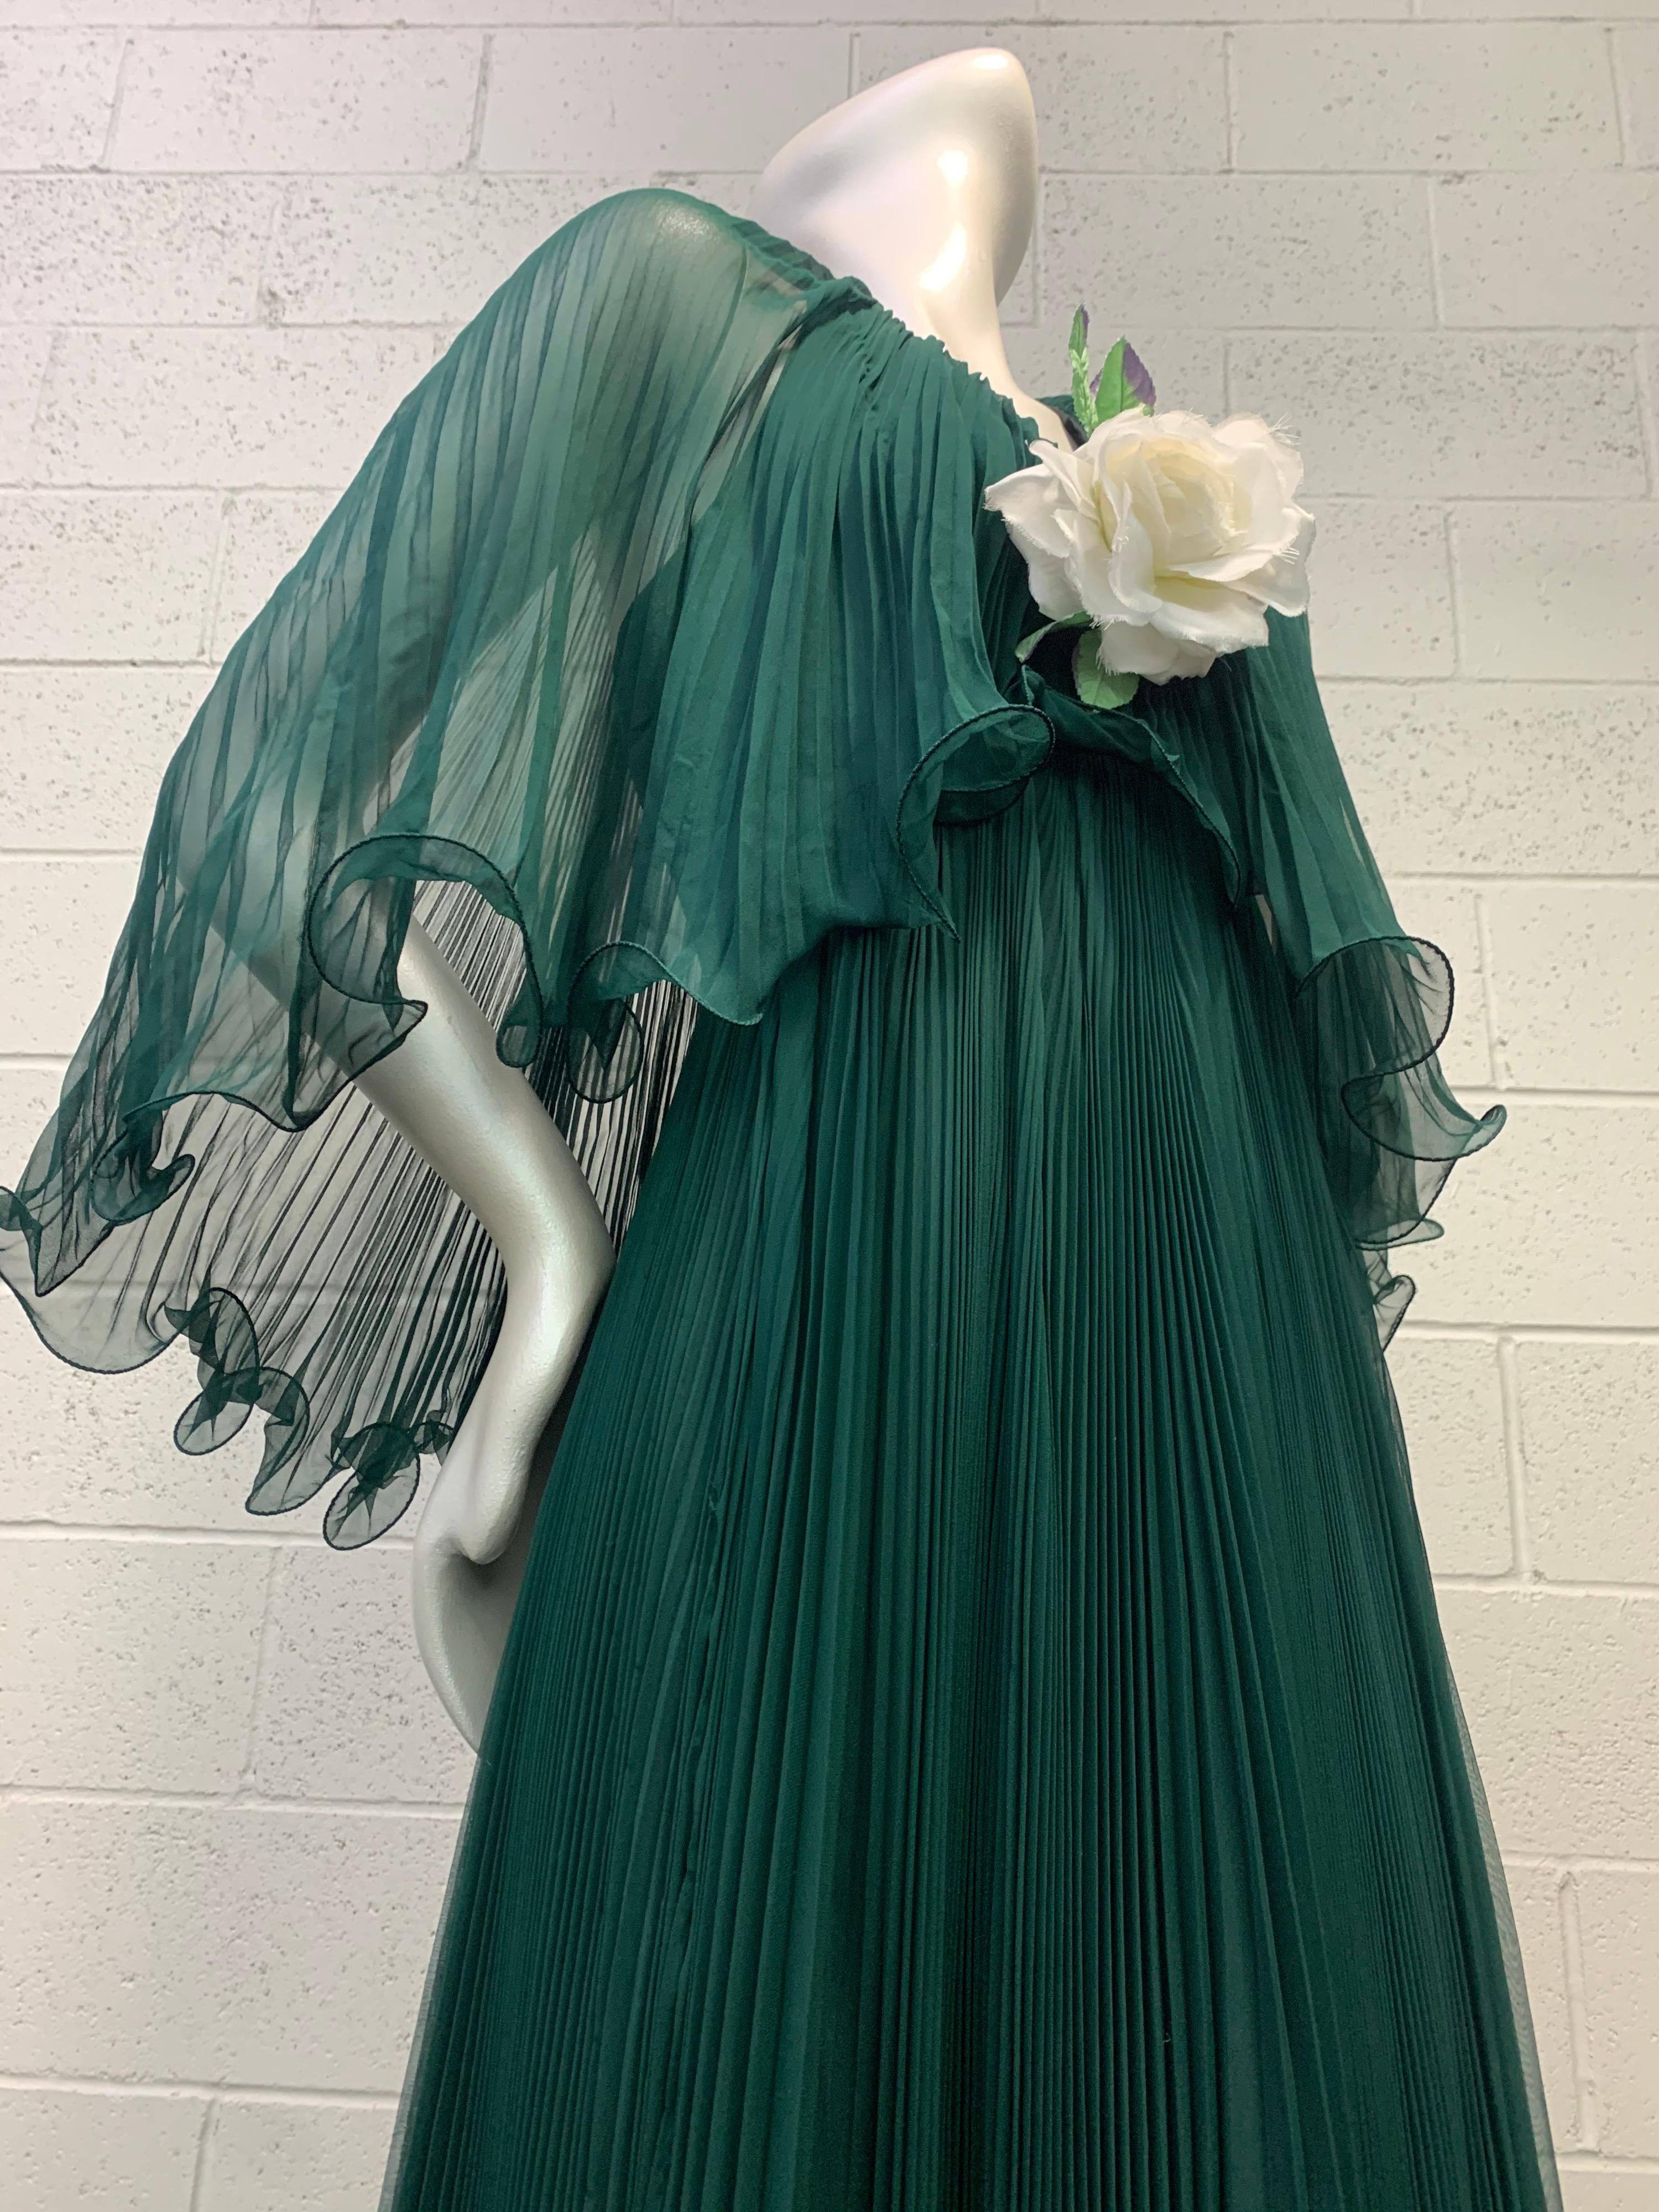 Une ravissante robe dos nu en mousseline de soie plissée vert forêt des années 1970 de Martha, le détaillant haut de gamme de renommée mondiale. Une volumineuse superposition de mousseline plissée en accordéon forme un caplet sur cette divine robe